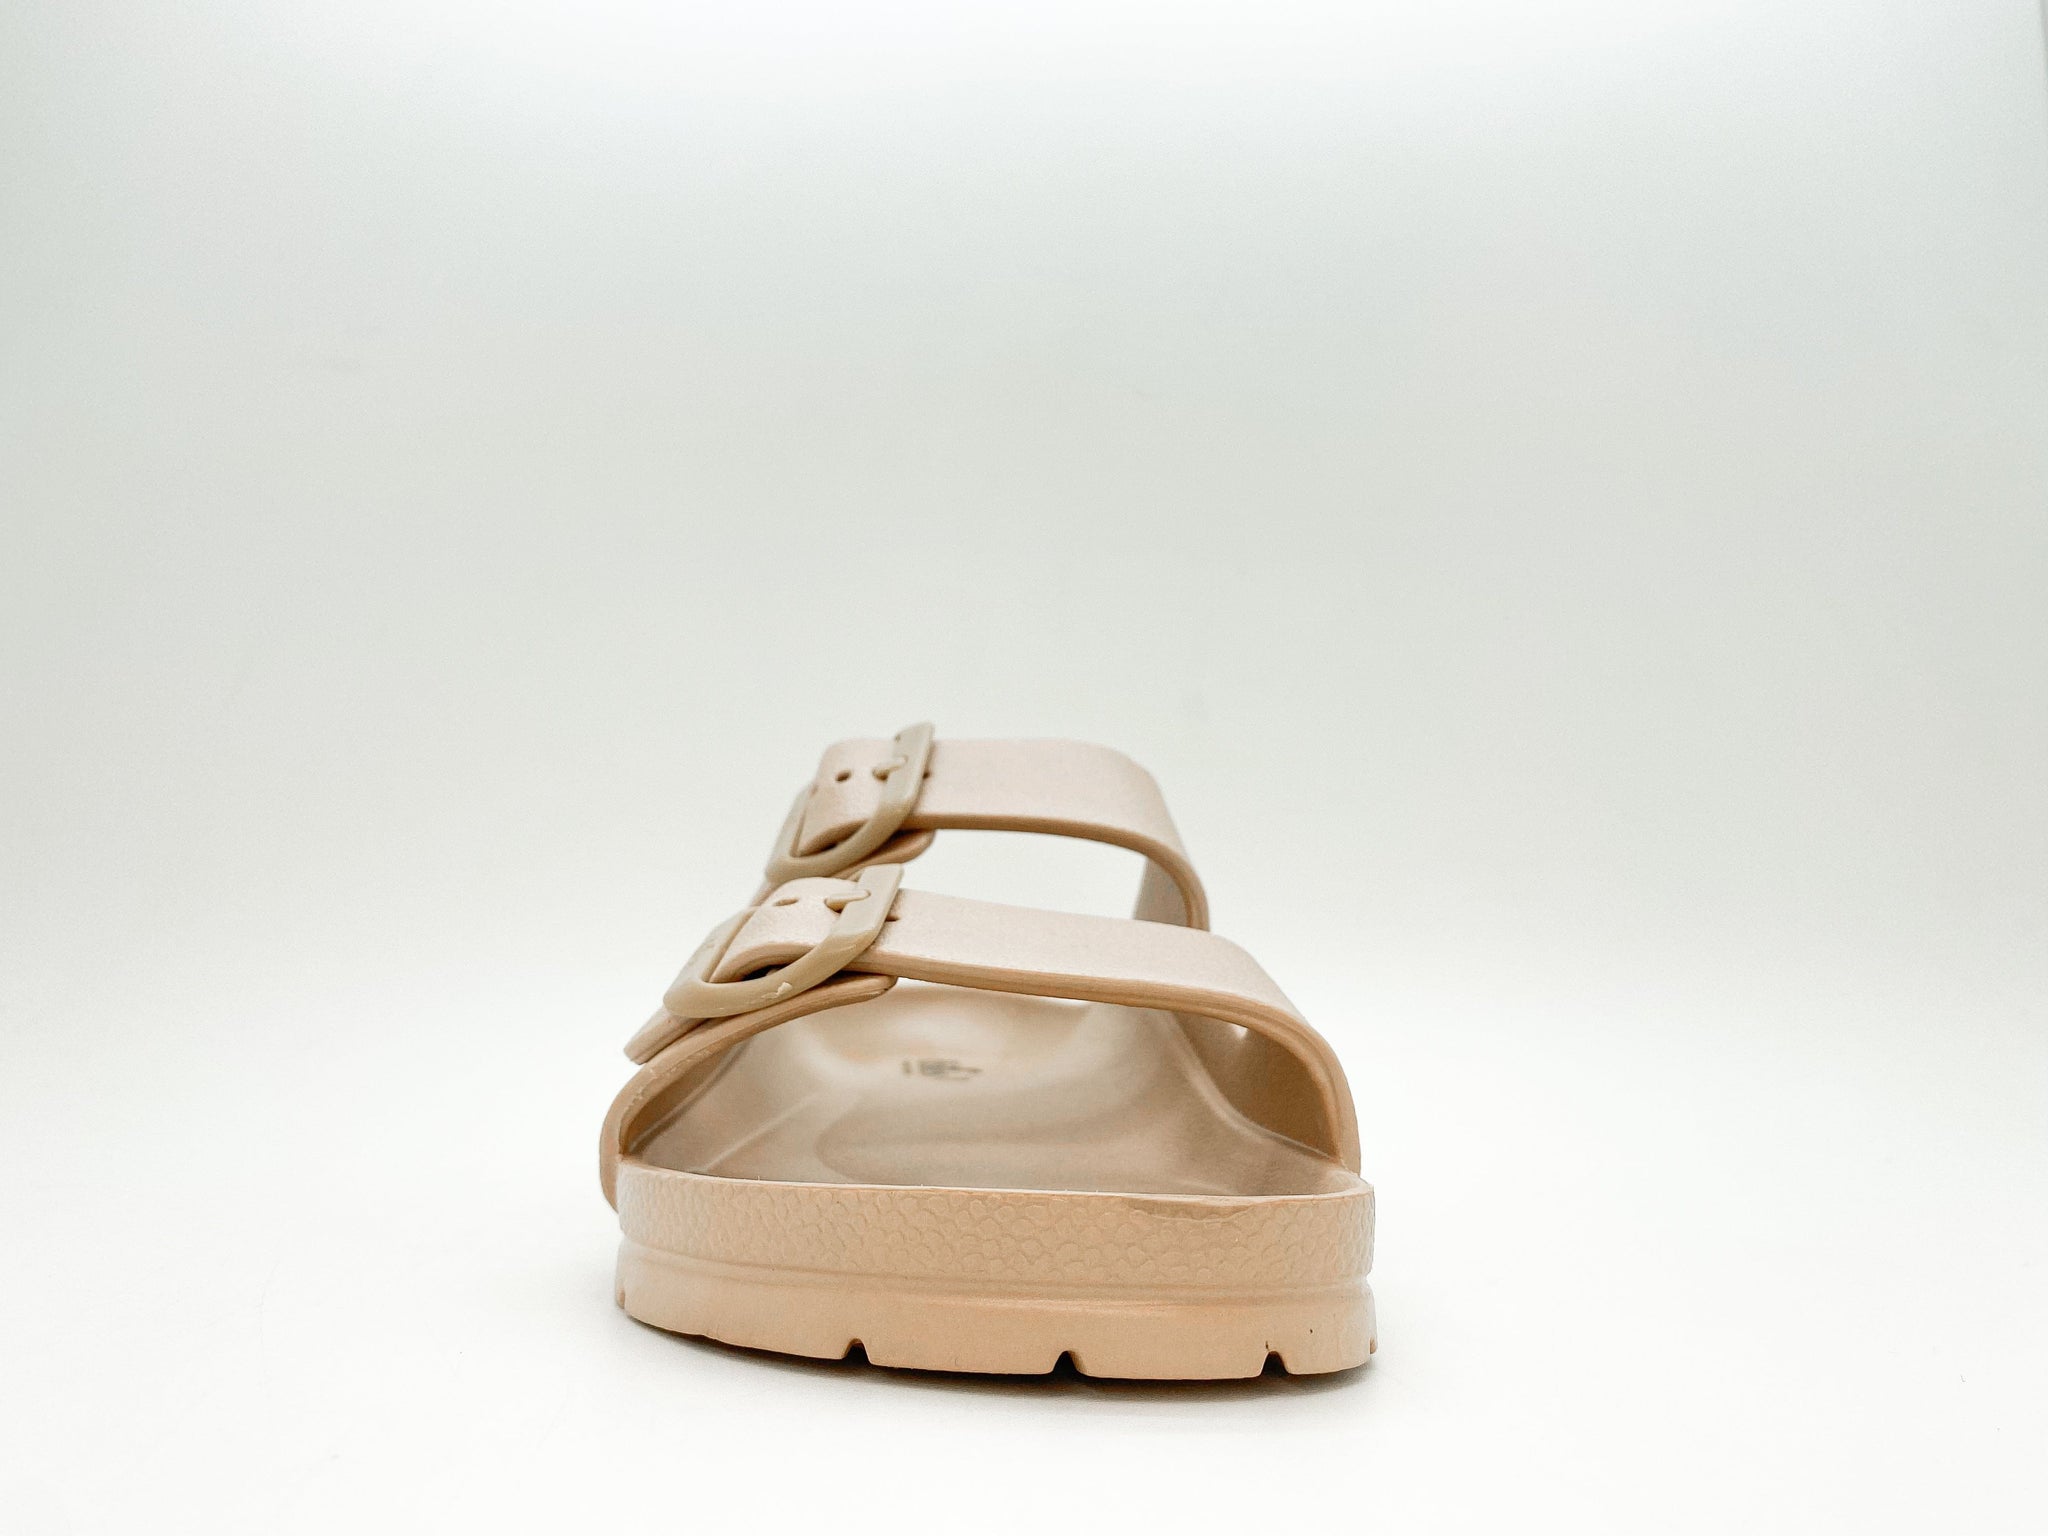 NAT 2 calzado thies 1856 ® Ecofoam Sandalia bronce moda sostenible moda ética